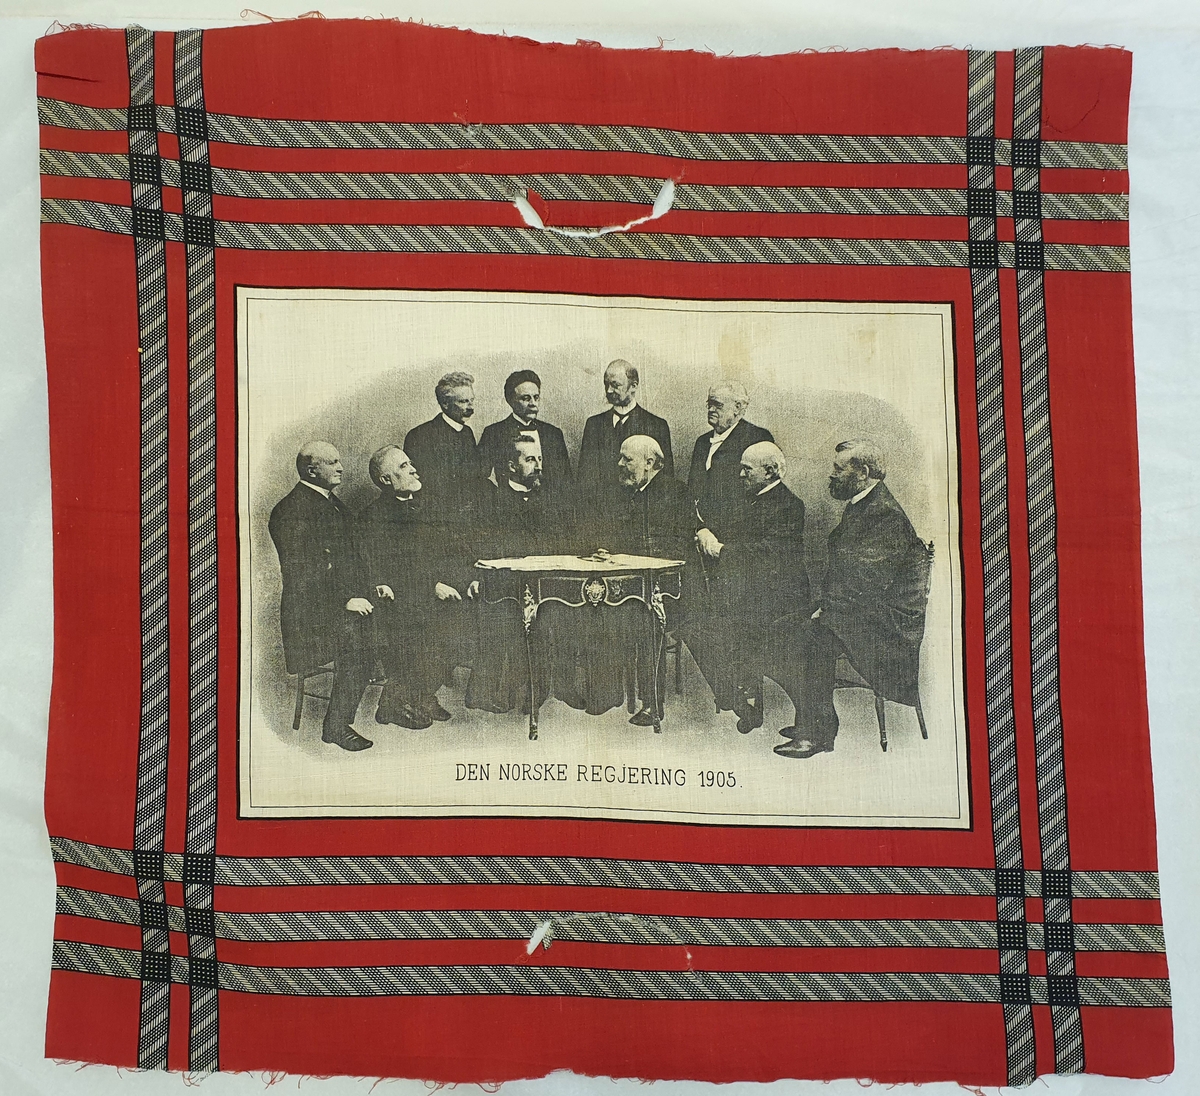 Rødt tørkle av bomull med påtrykket bilde av den norske regjering av 1905.